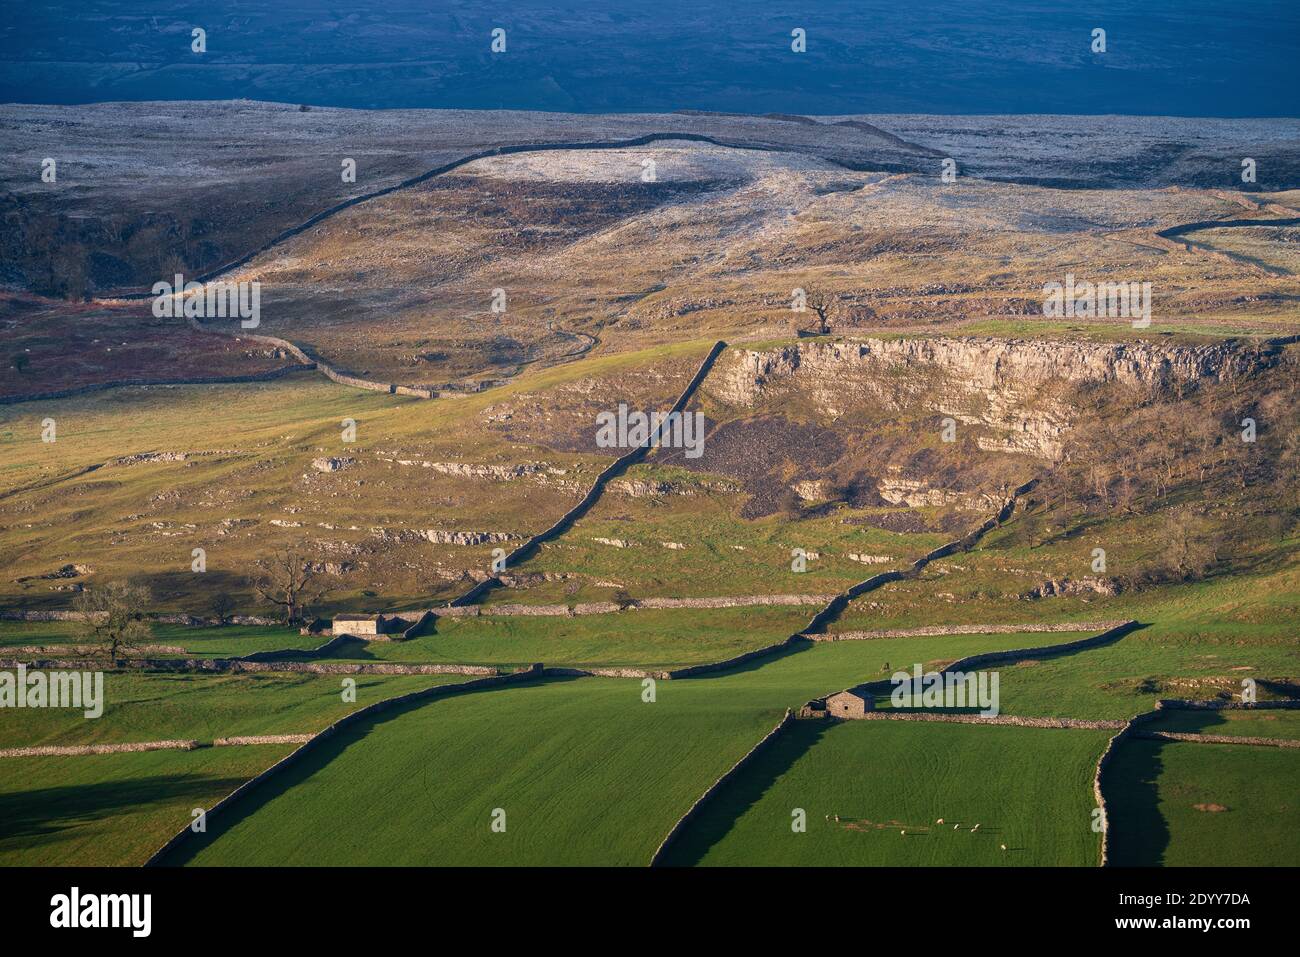 La luz del sol baja del invierno recoge las paredes de piedra seca y los graneros viejos cerca de Langcliffe en los valles de Yorkshire, con la cicatriz imponente de Reinsber levantándose detrás. Foto de stock